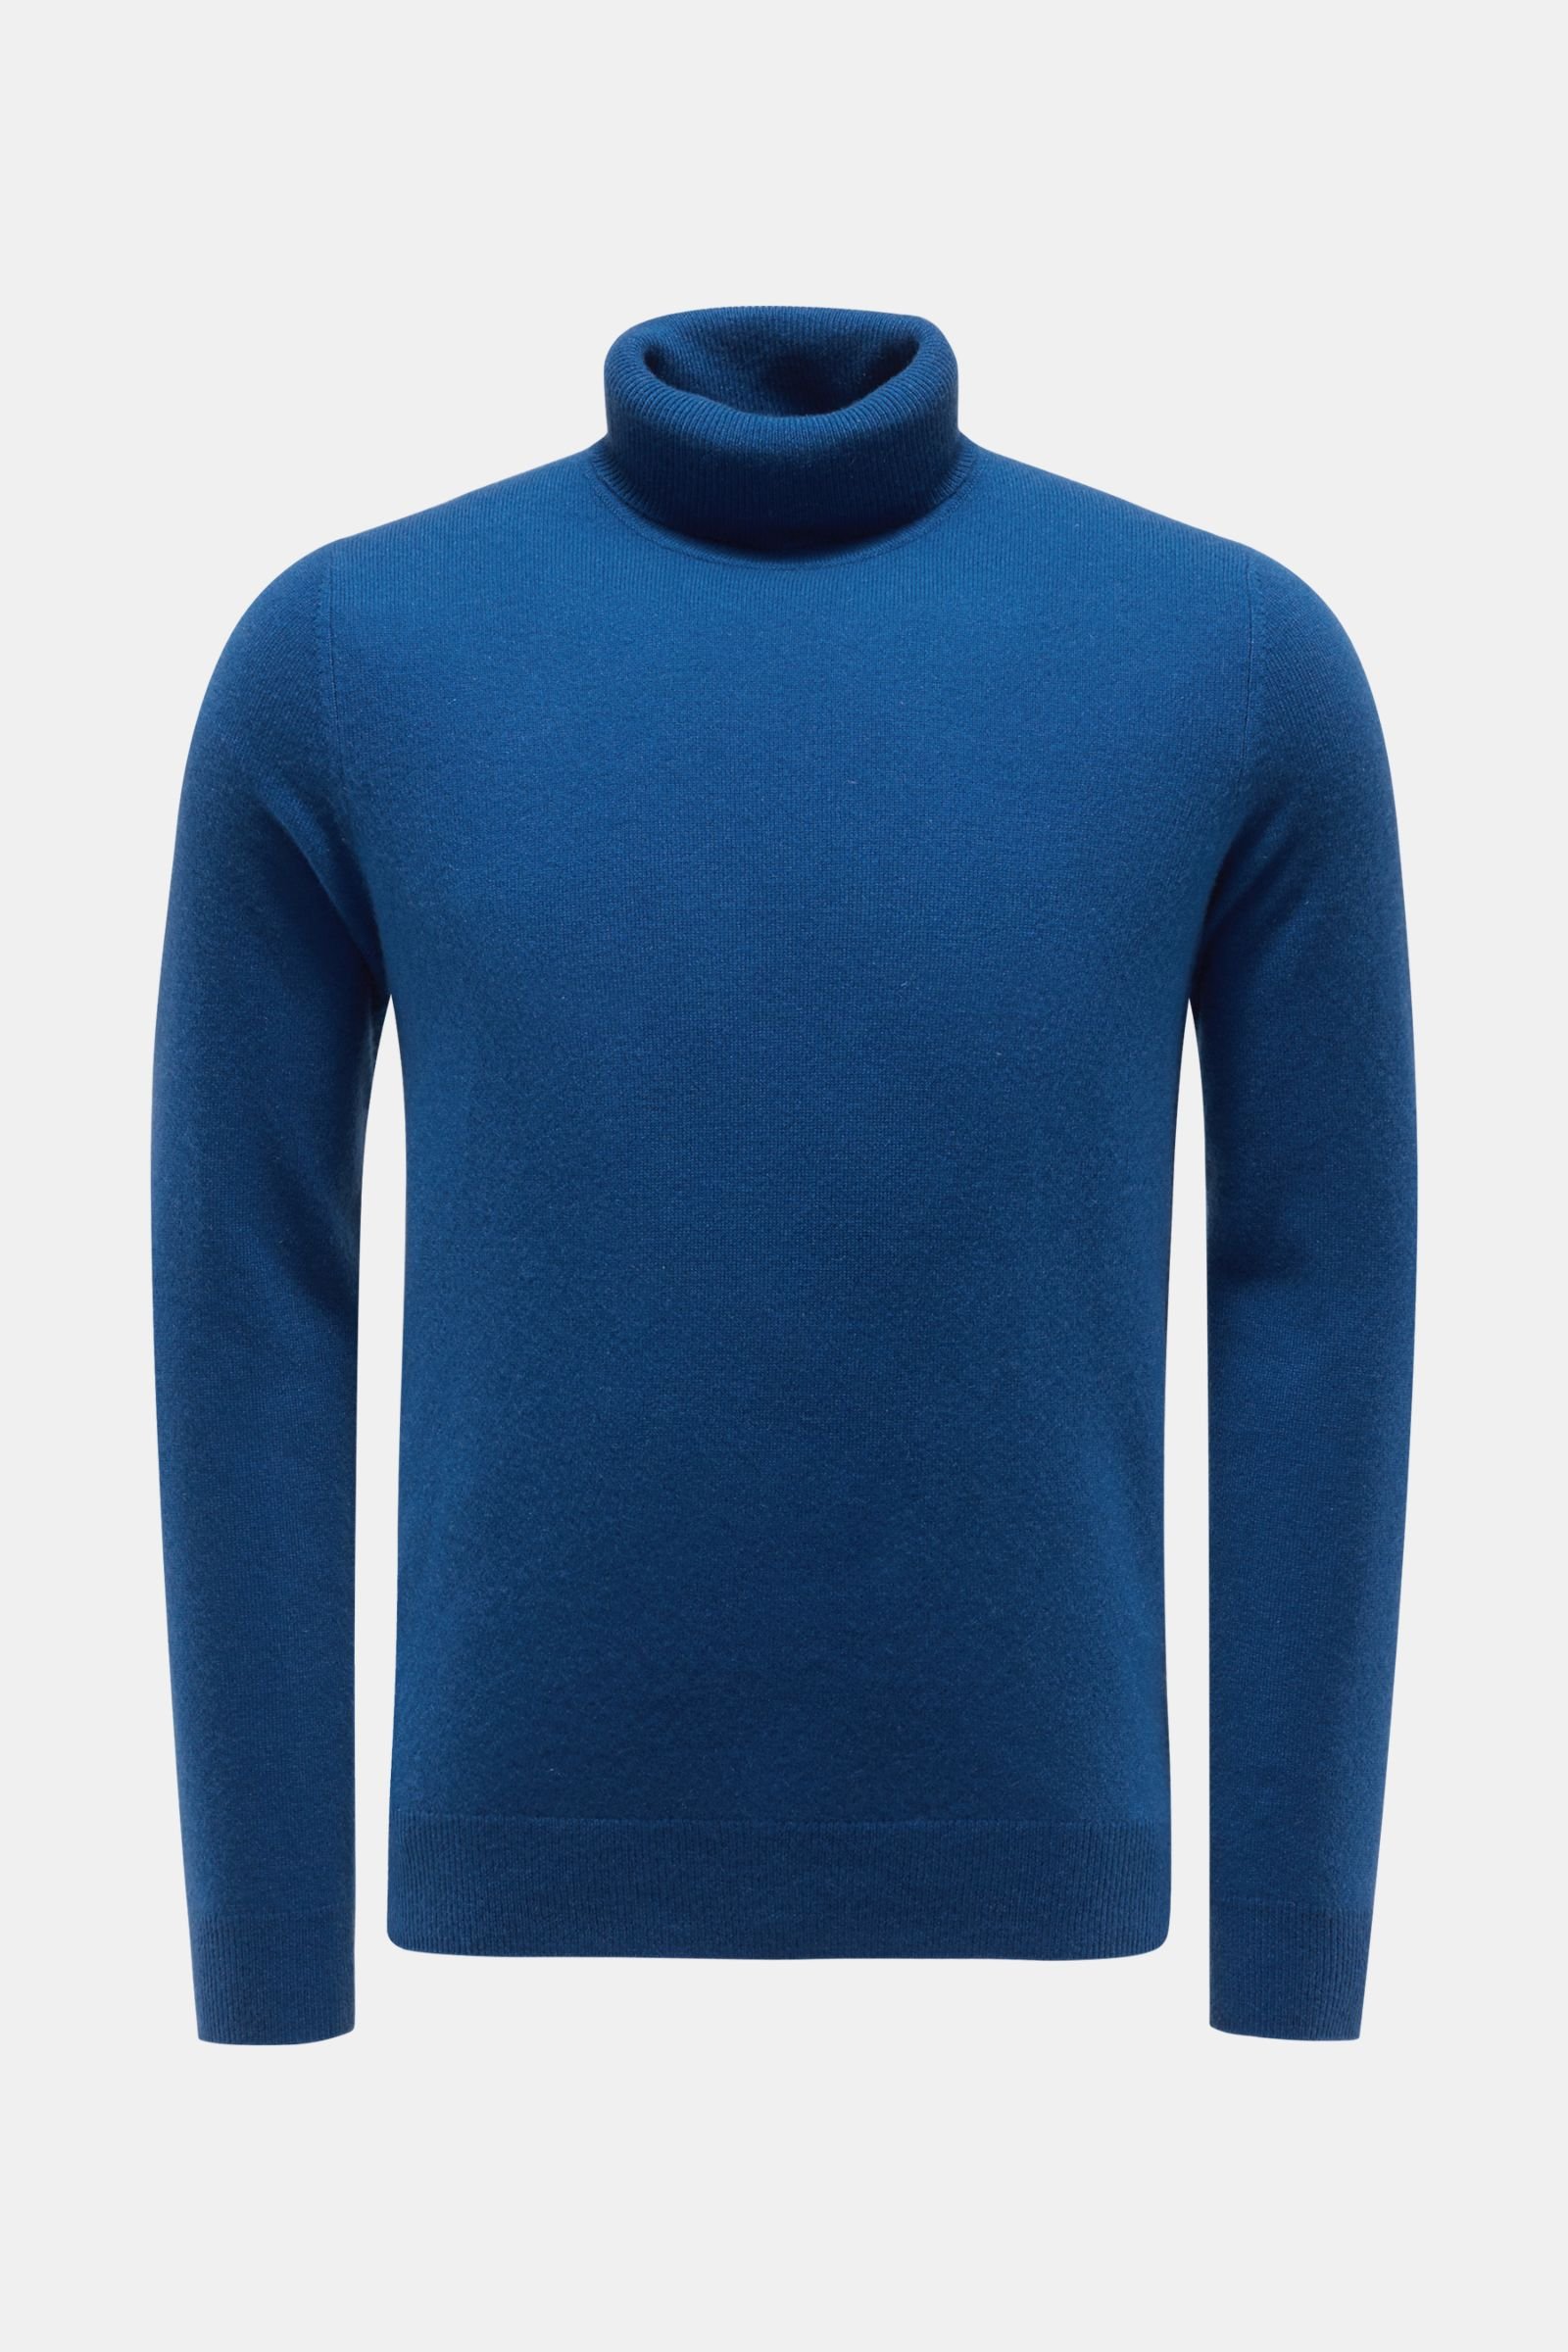 VON BRAUN cashmere turtleneck jumper blue | BRAUN Hamburg